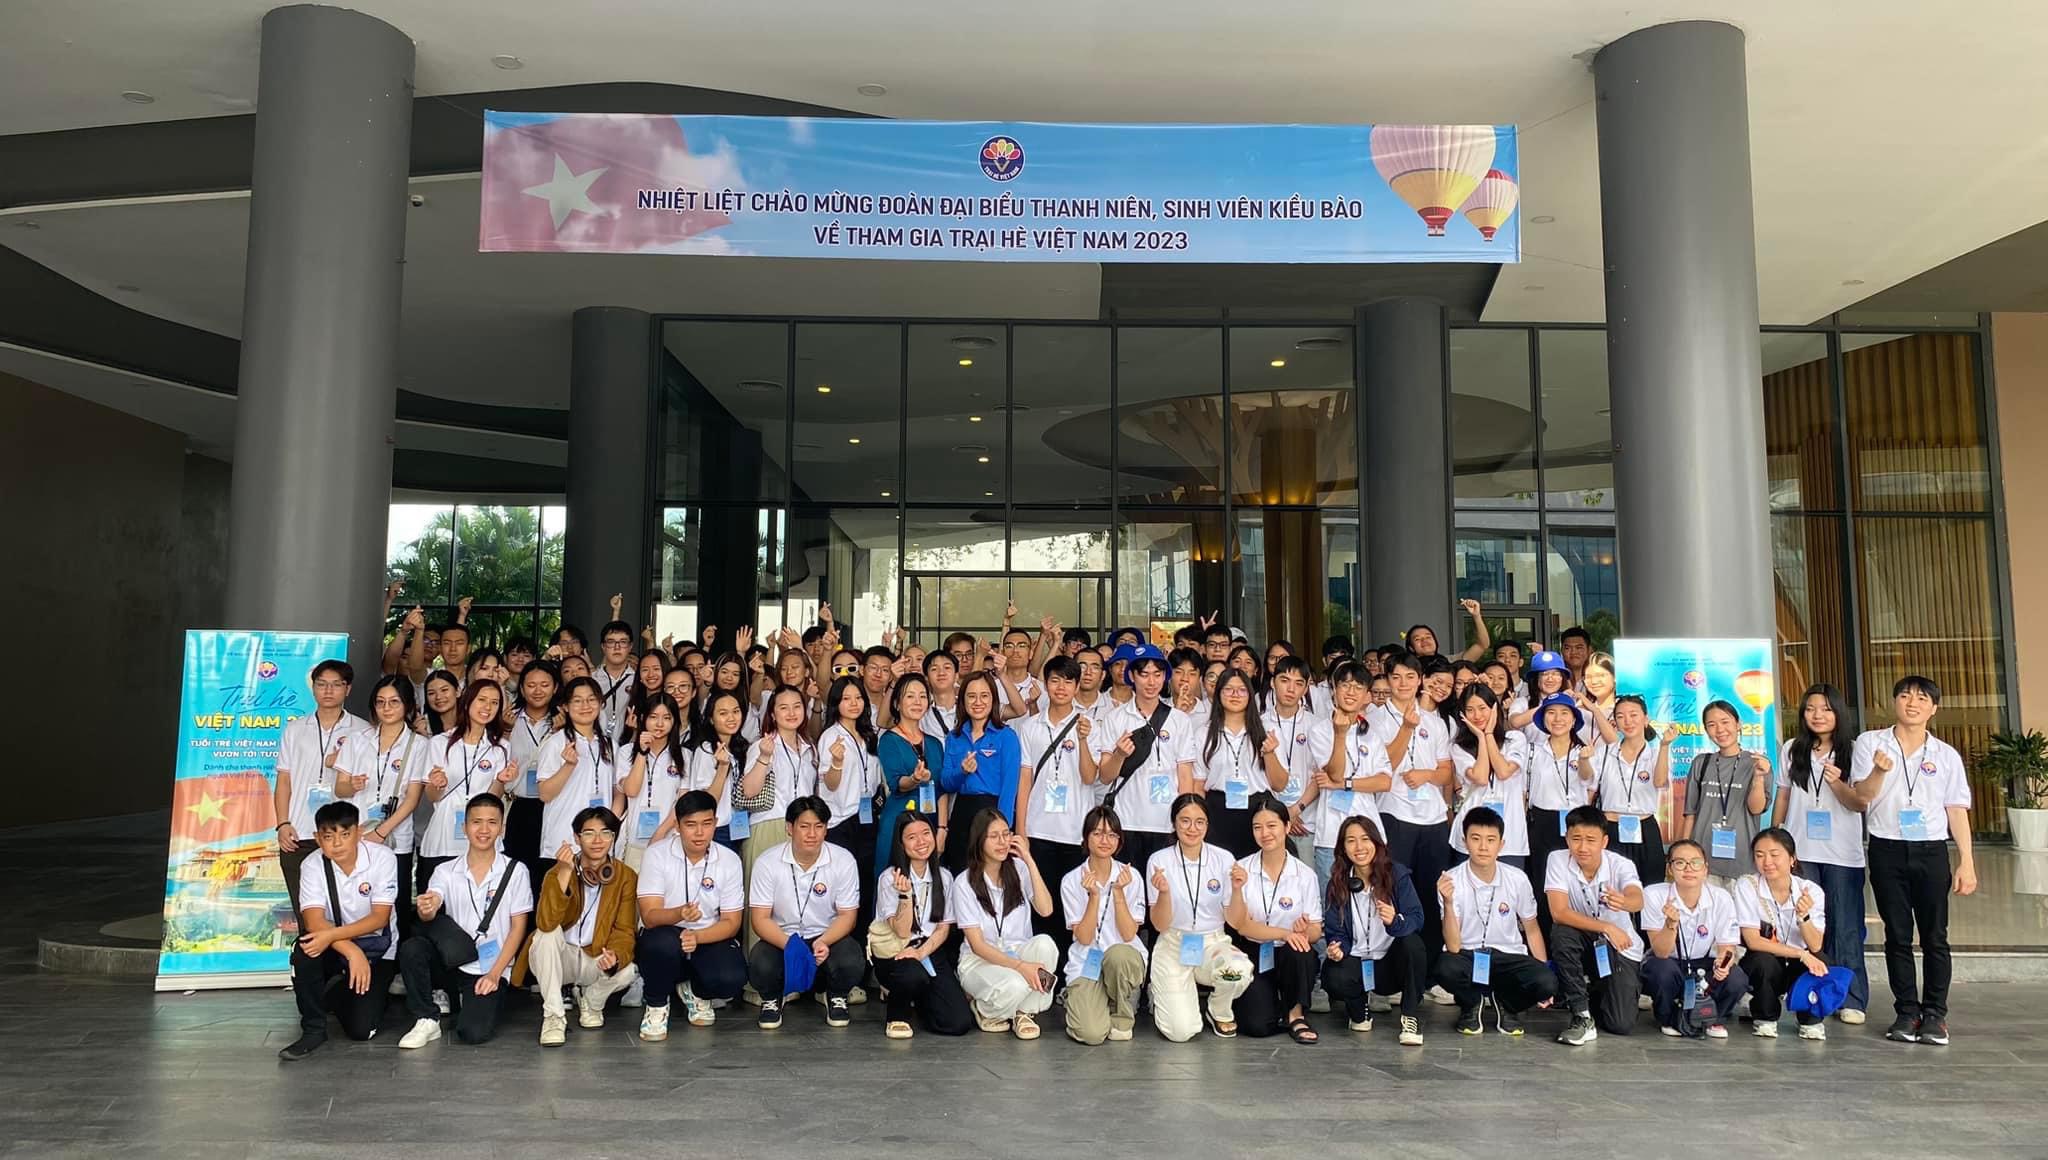 Ninh Bình: Tiếp đón đoàn thanh niên, sinh viên kiều bào Việt Nam ở nước ngoài tham gia “Trại hè Việt Nam năm 2023”